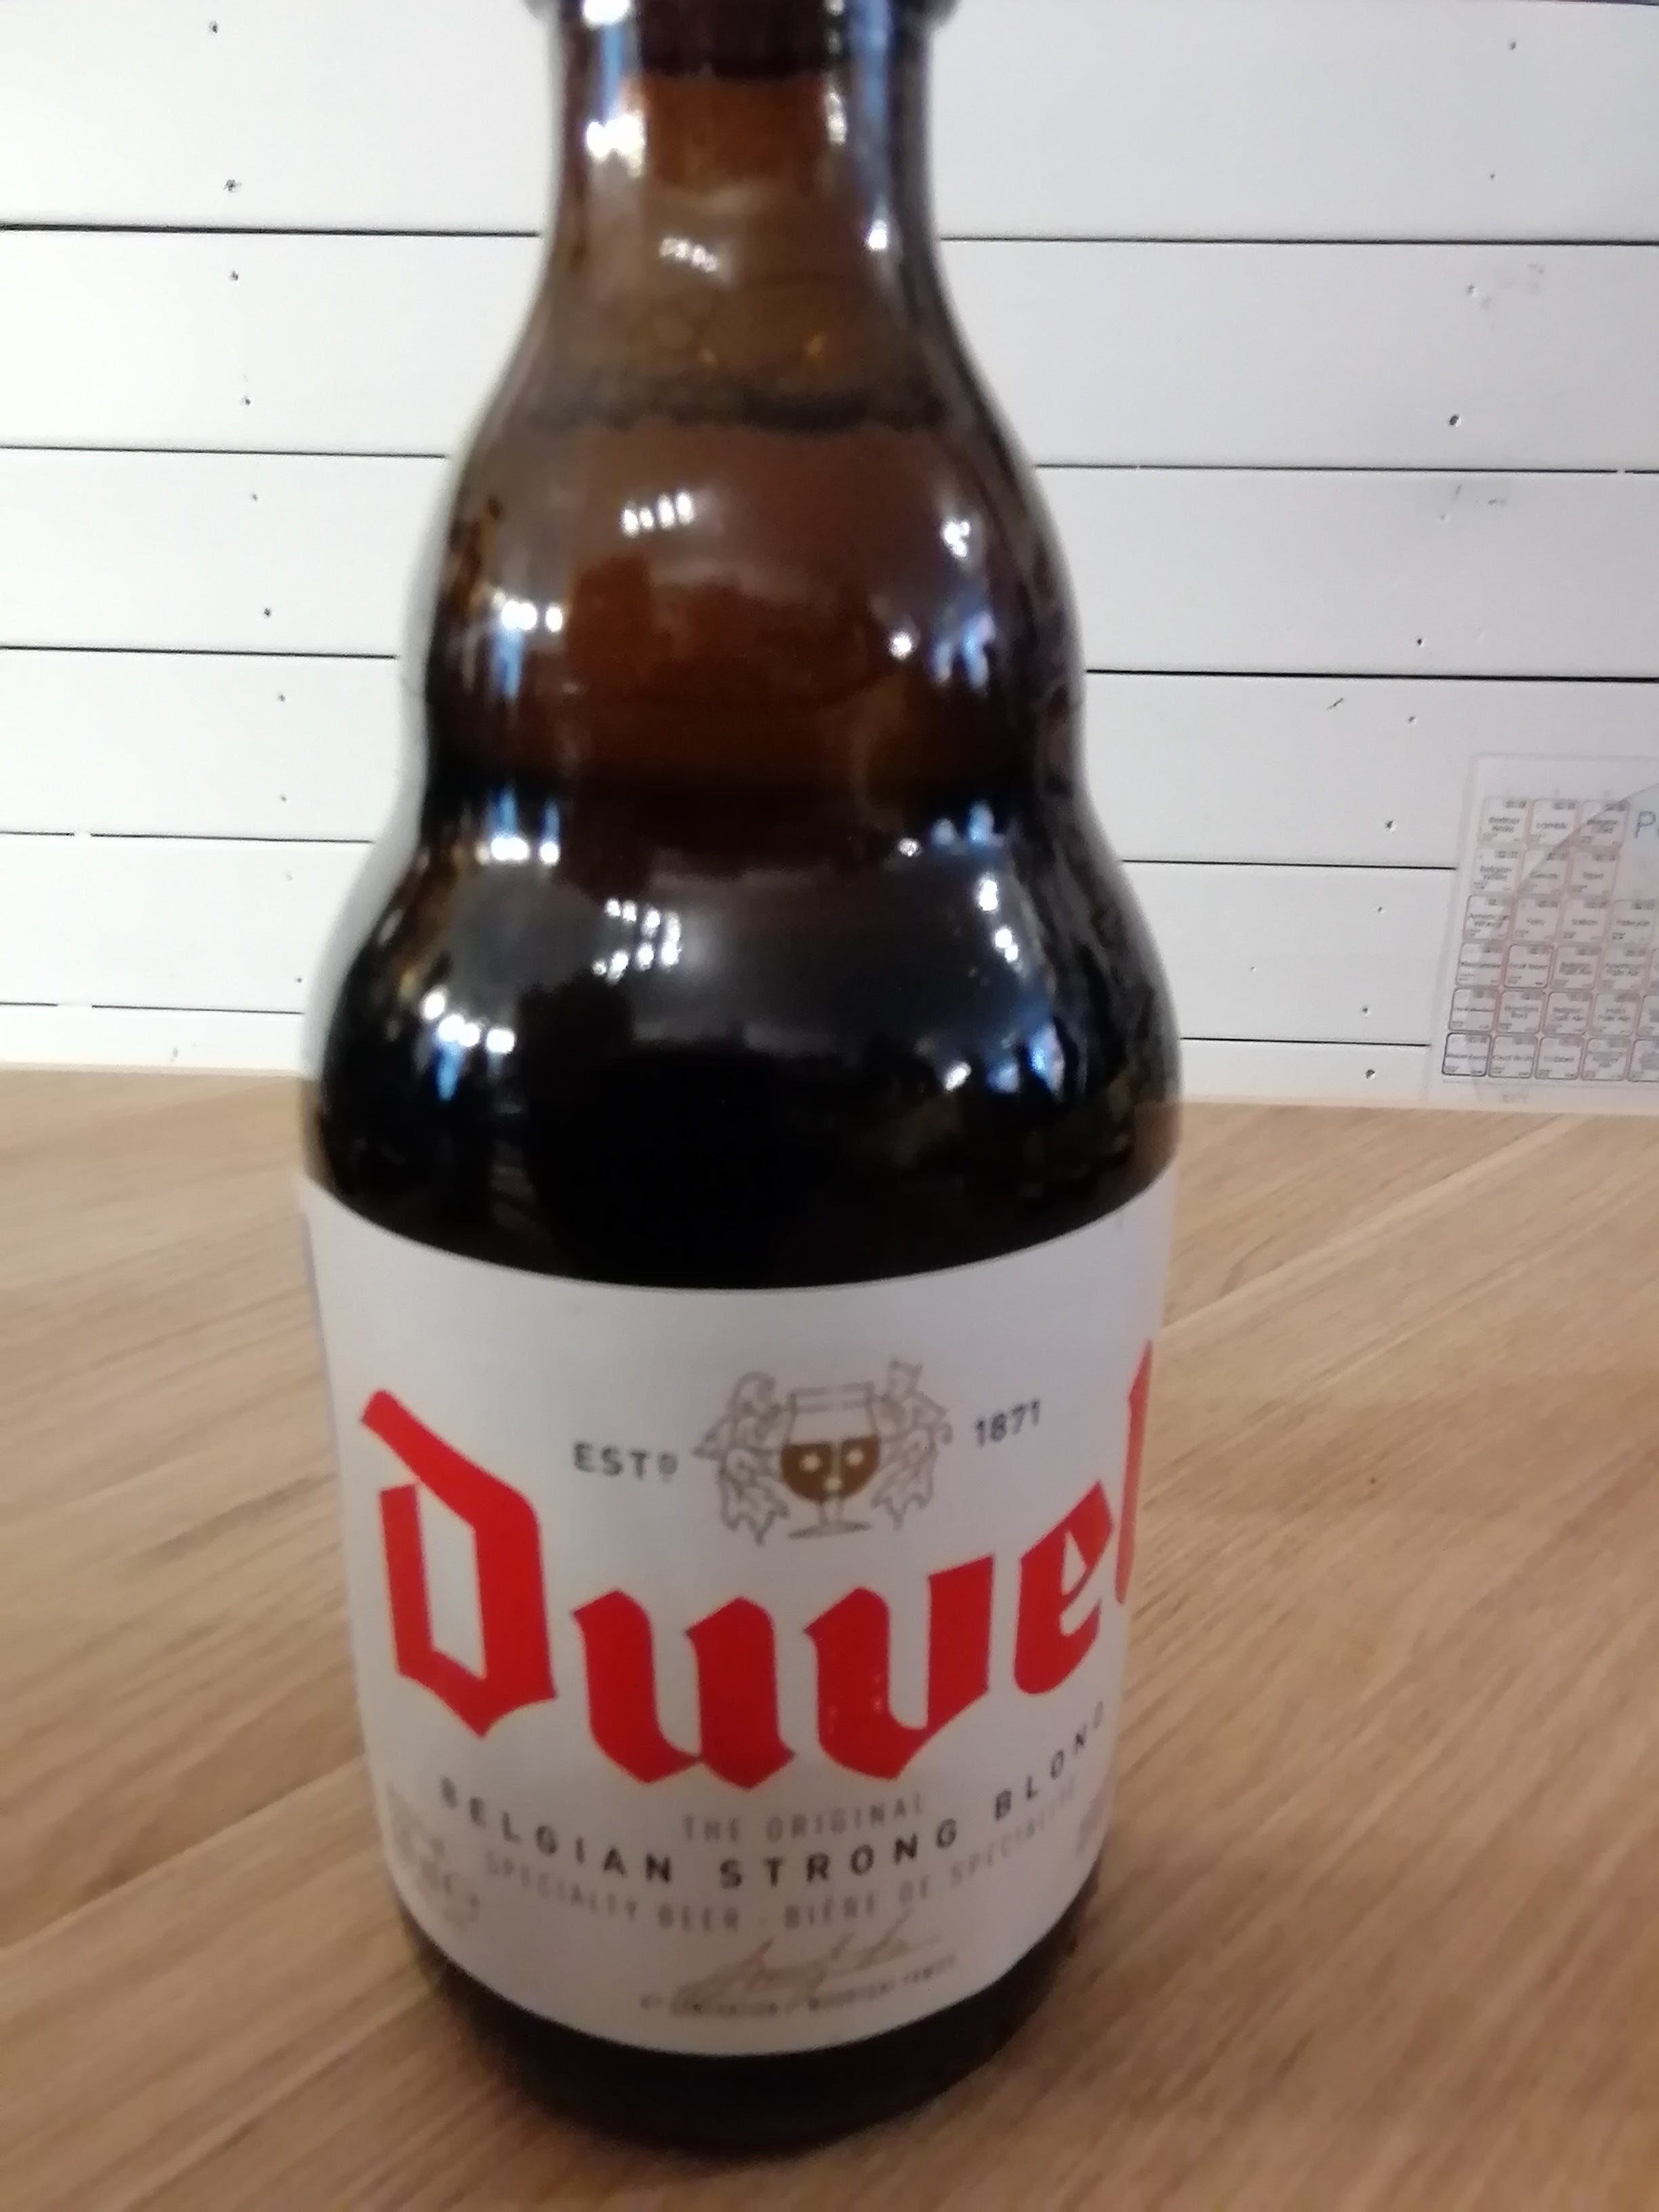 Beershoppen Duvel Golden Ale - Belgian Strong Blonde